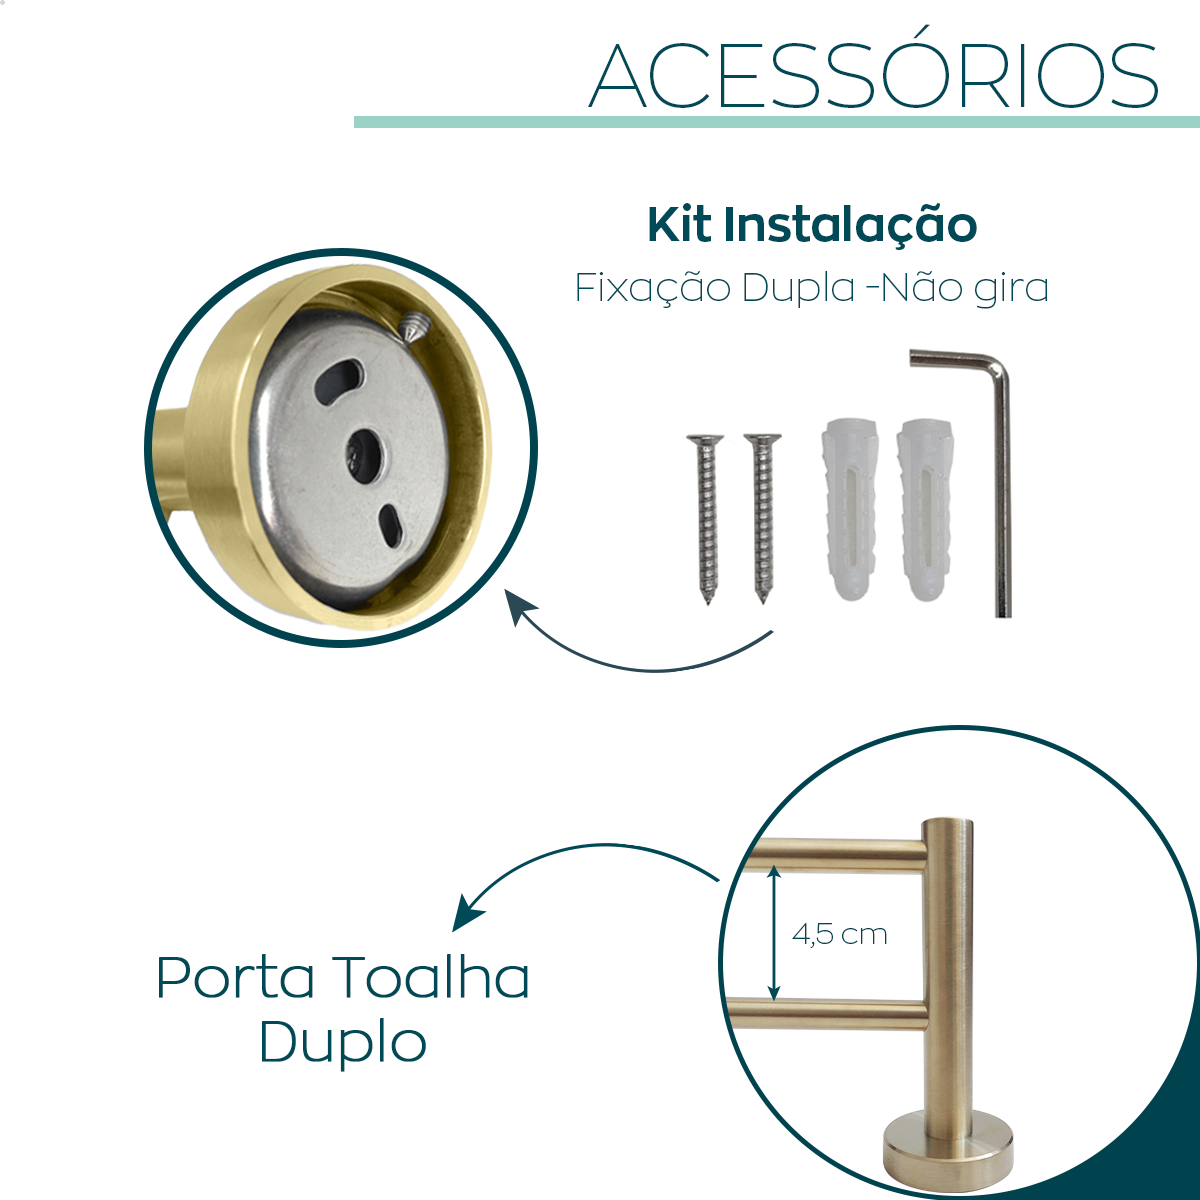 Kit Acessorios Banheiro Dourado Escovado Inox 4 Peças Papeleira Cabide Toalheiro Duplo Porta Toalha - 4